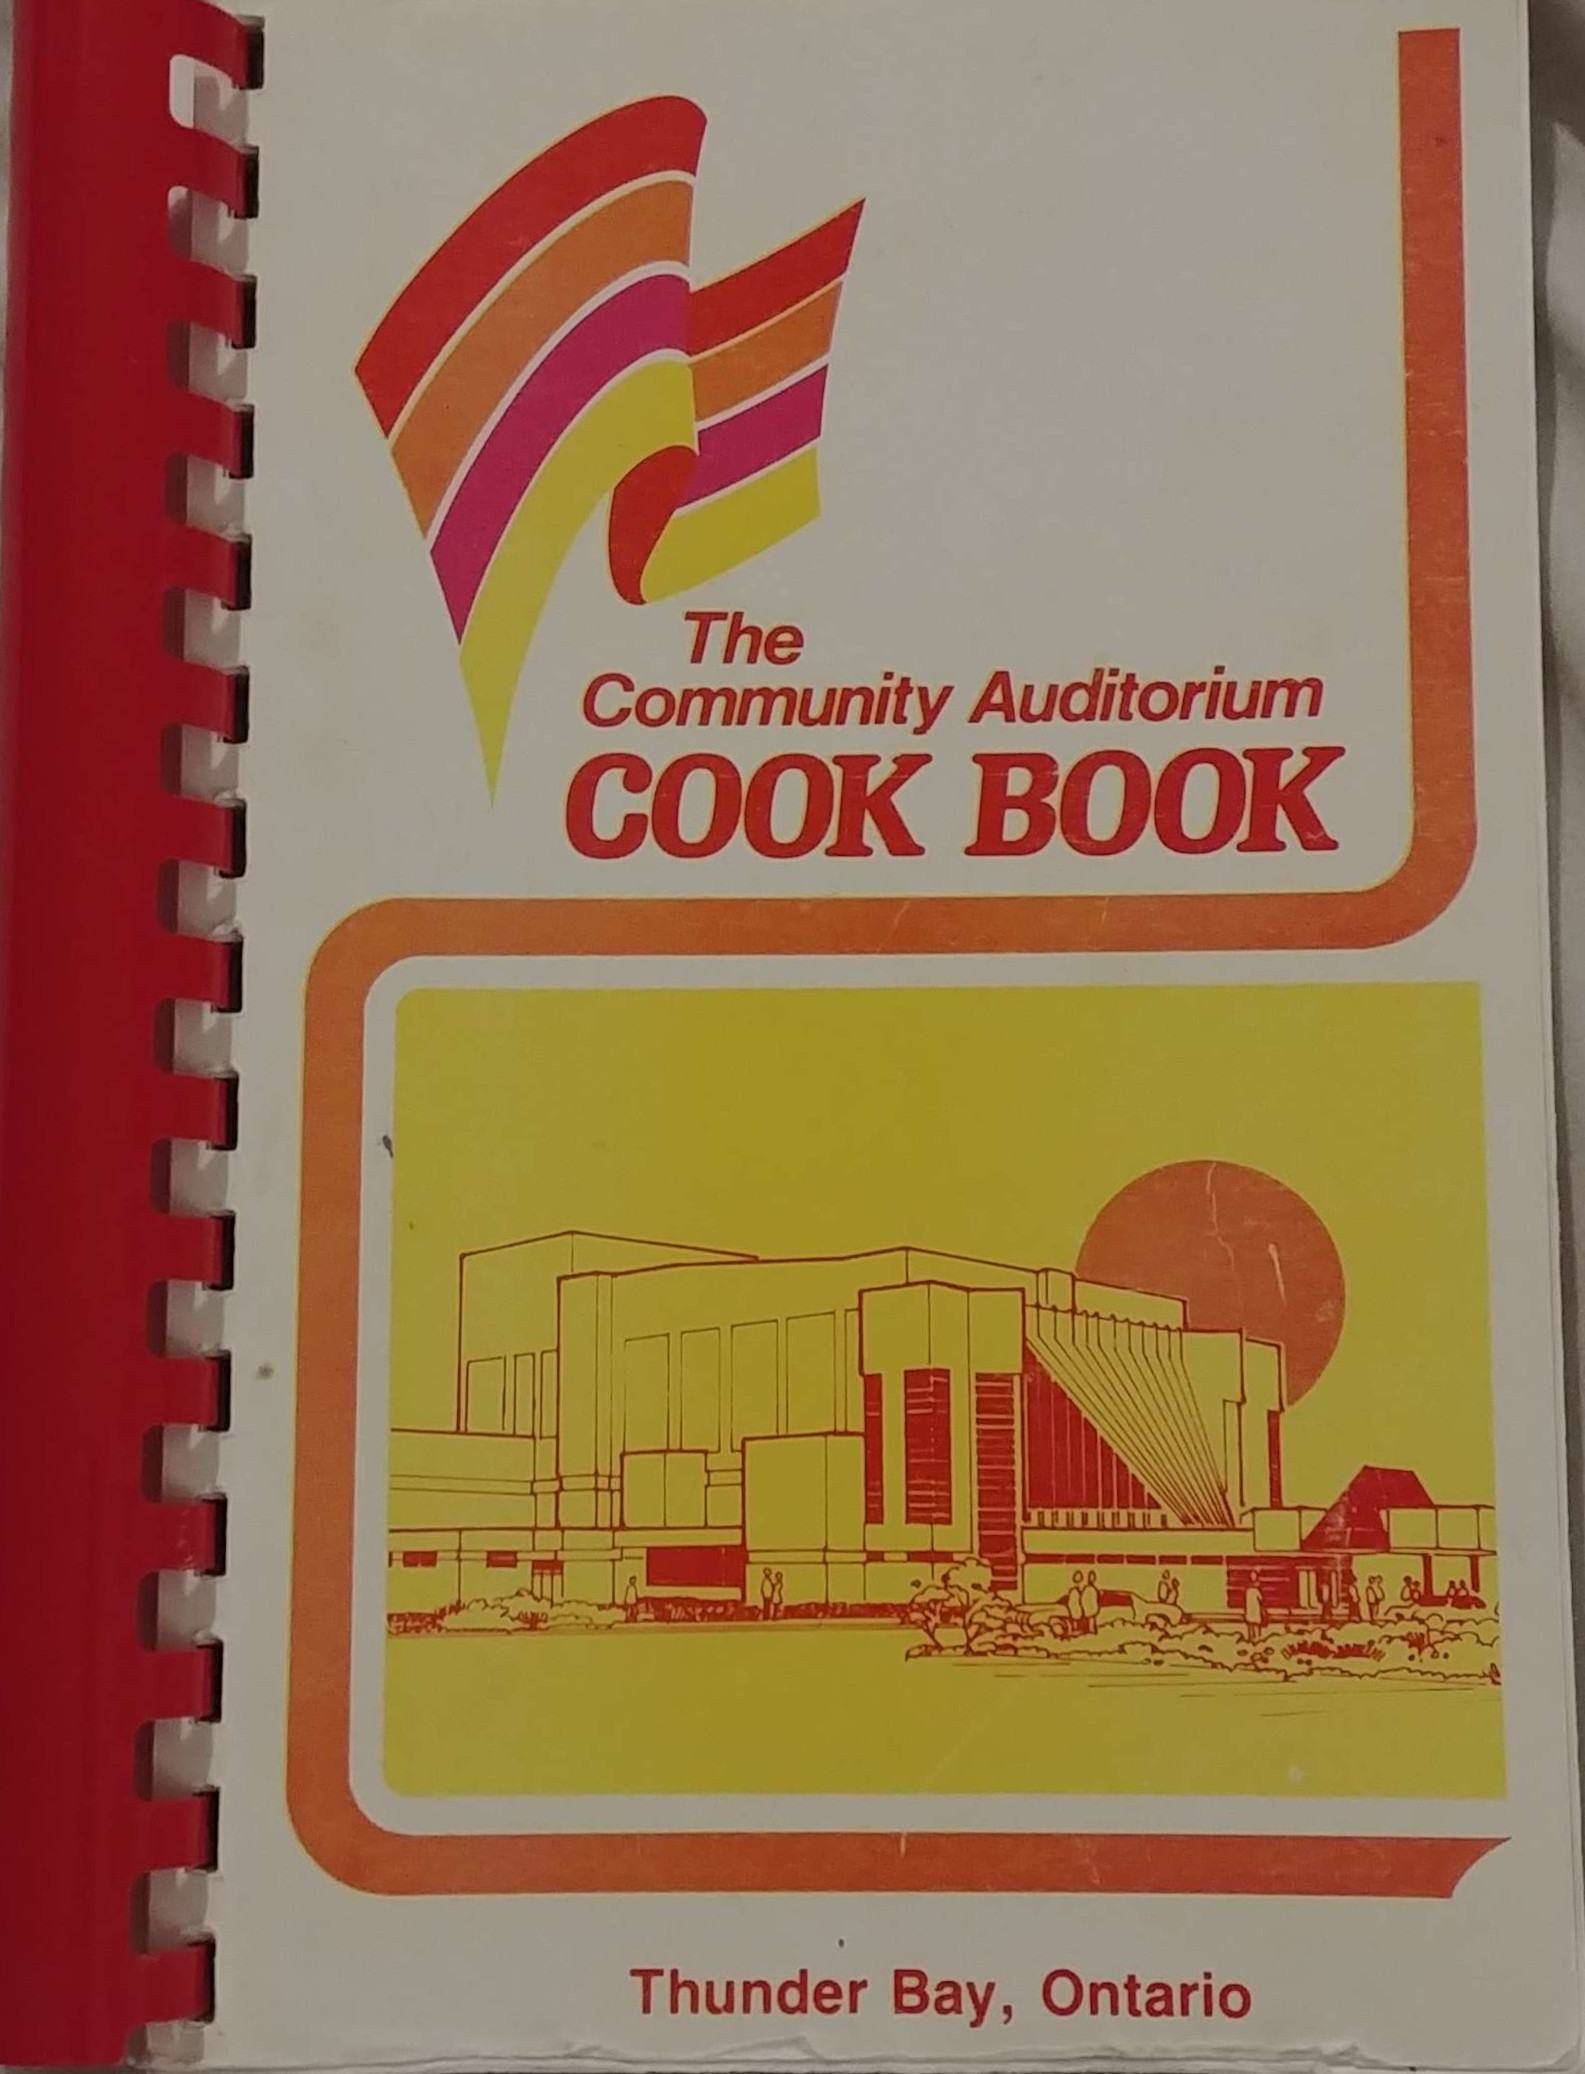 The Community Auditorium Cook Book (1982, Thunder Bay Community Auditorium)